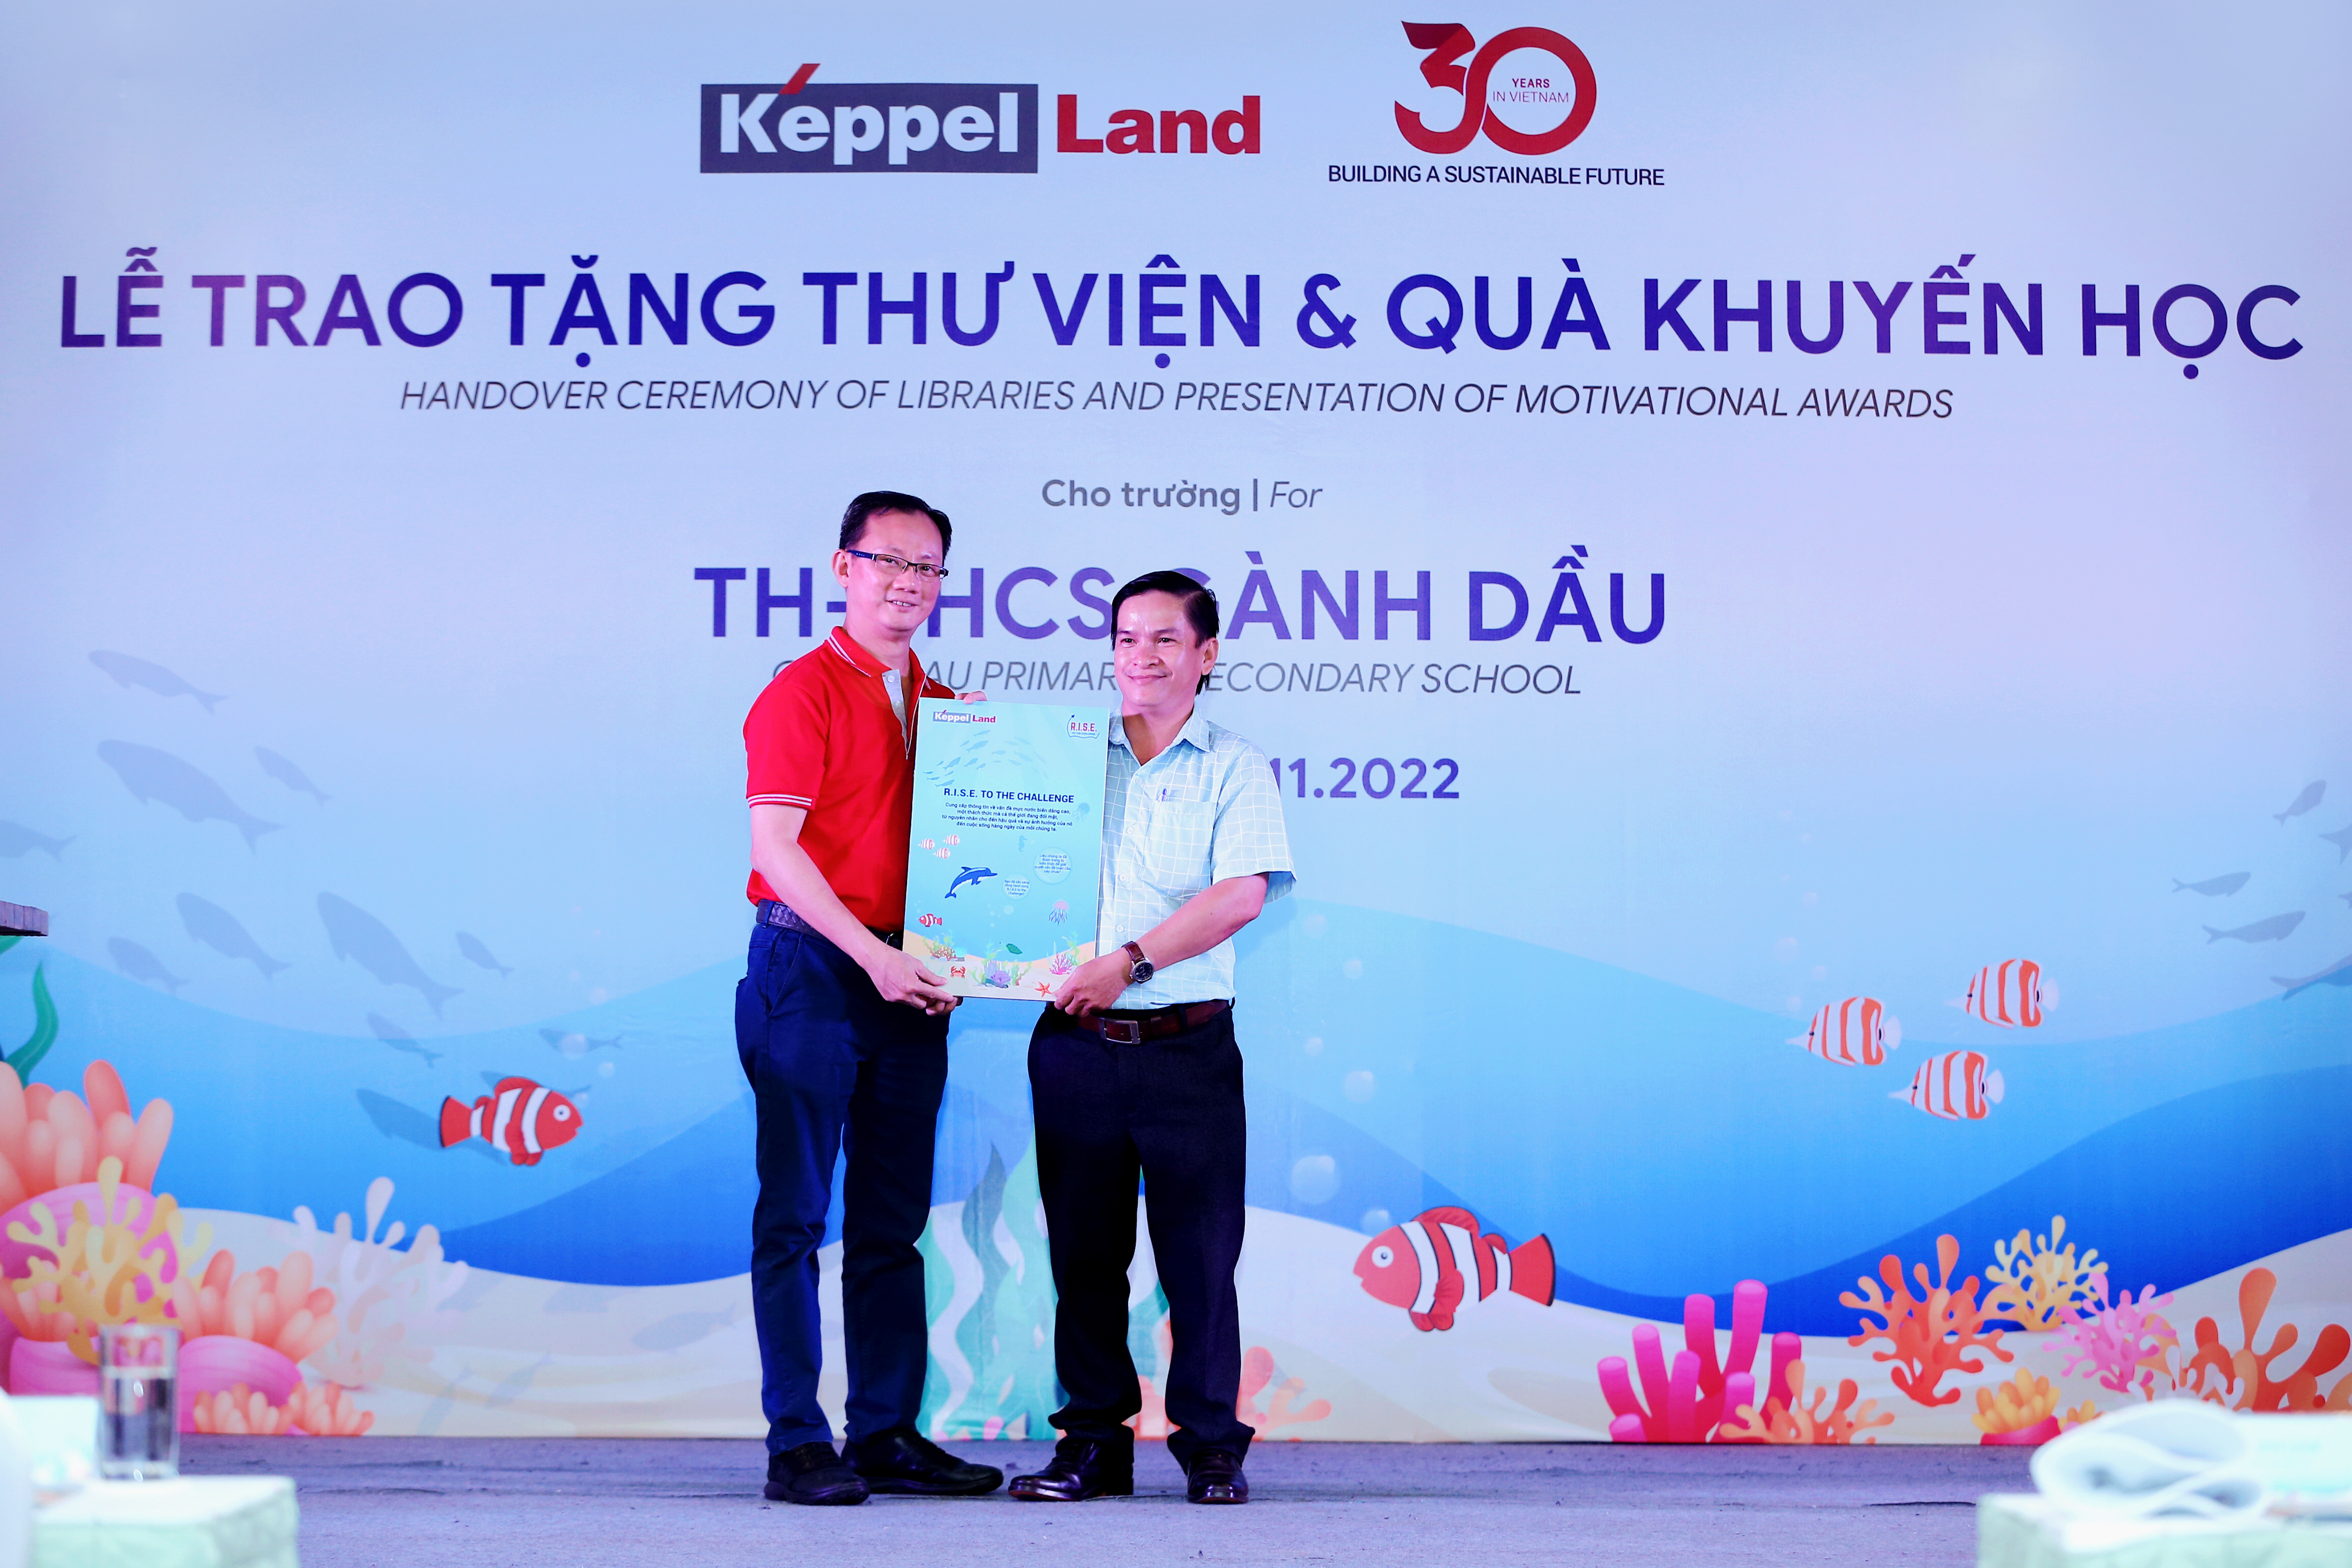 Ông Joseph Low, Chủ tịch Keppel Land Việt Nam trao tặng sách R.I.S.E to the Challenge cho Ông Đào Hữu Tuấn, Phó Hiệu Trưởng trường TH-THCS Gành Dầu.